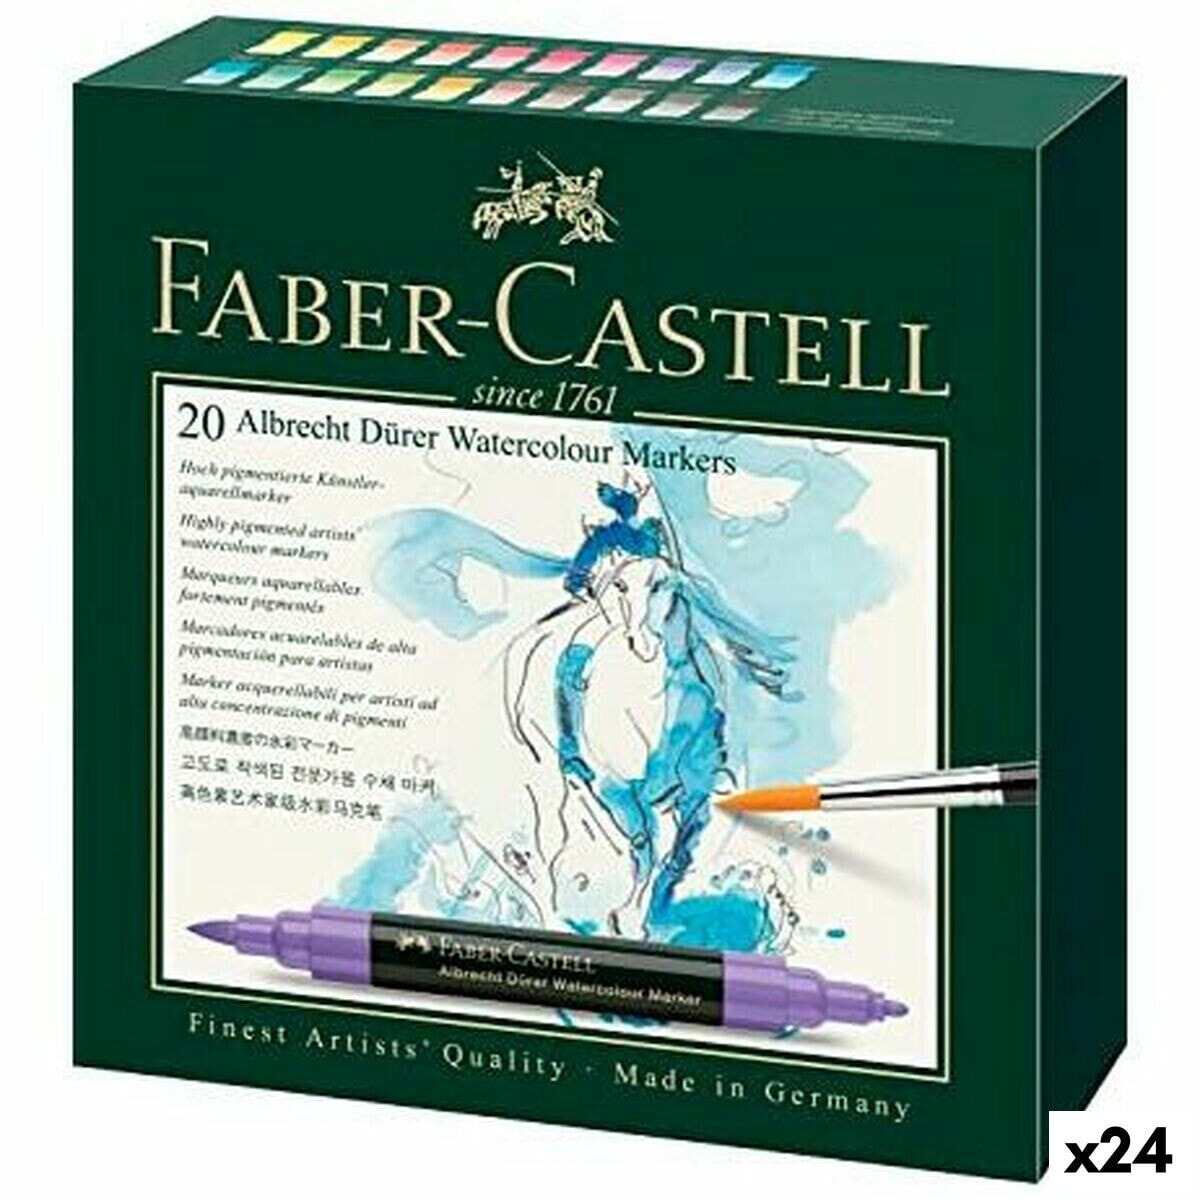 Set of Felt Tip Pens Faber-Castell Watercolours Case (24 Units)